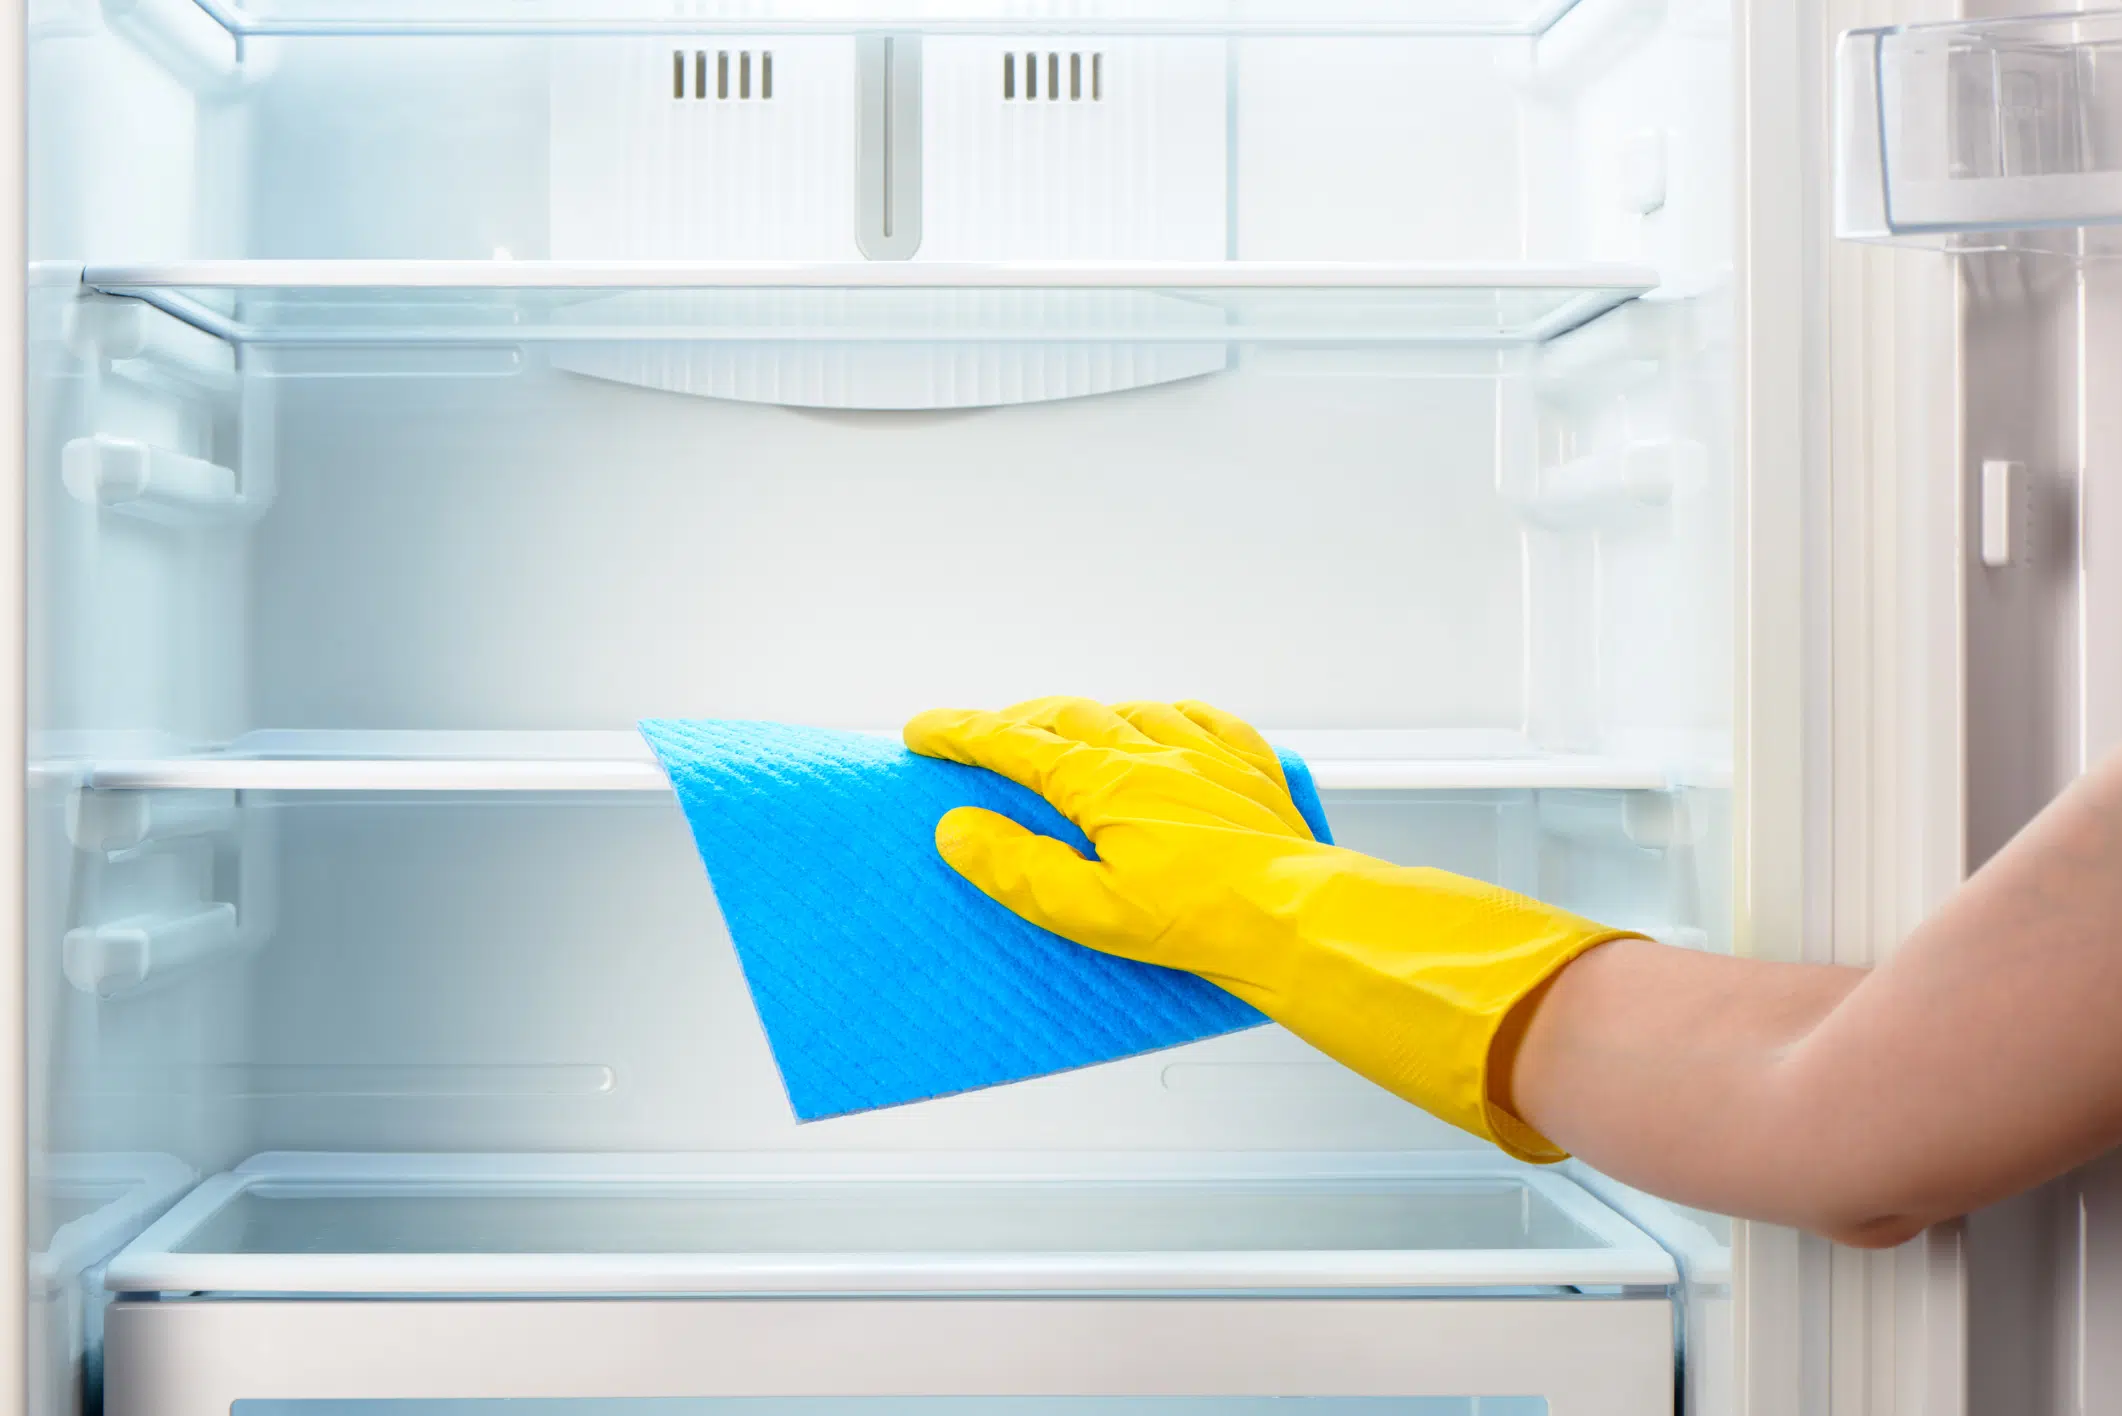 Nettoyer son réfrigérateur ; mode d'emploi!